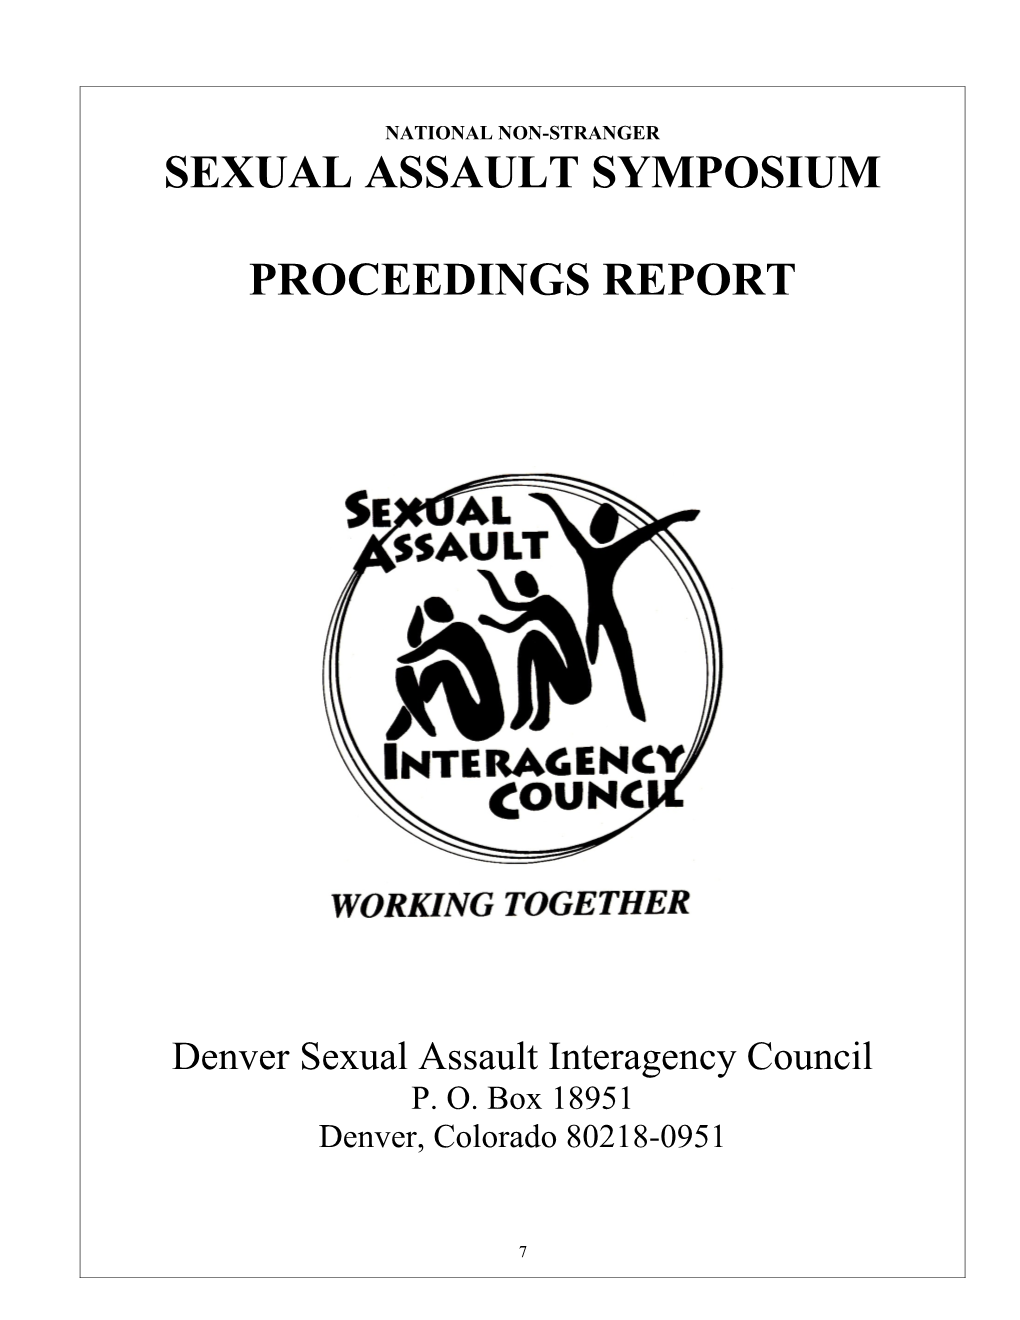 Symposium Proceedings Report